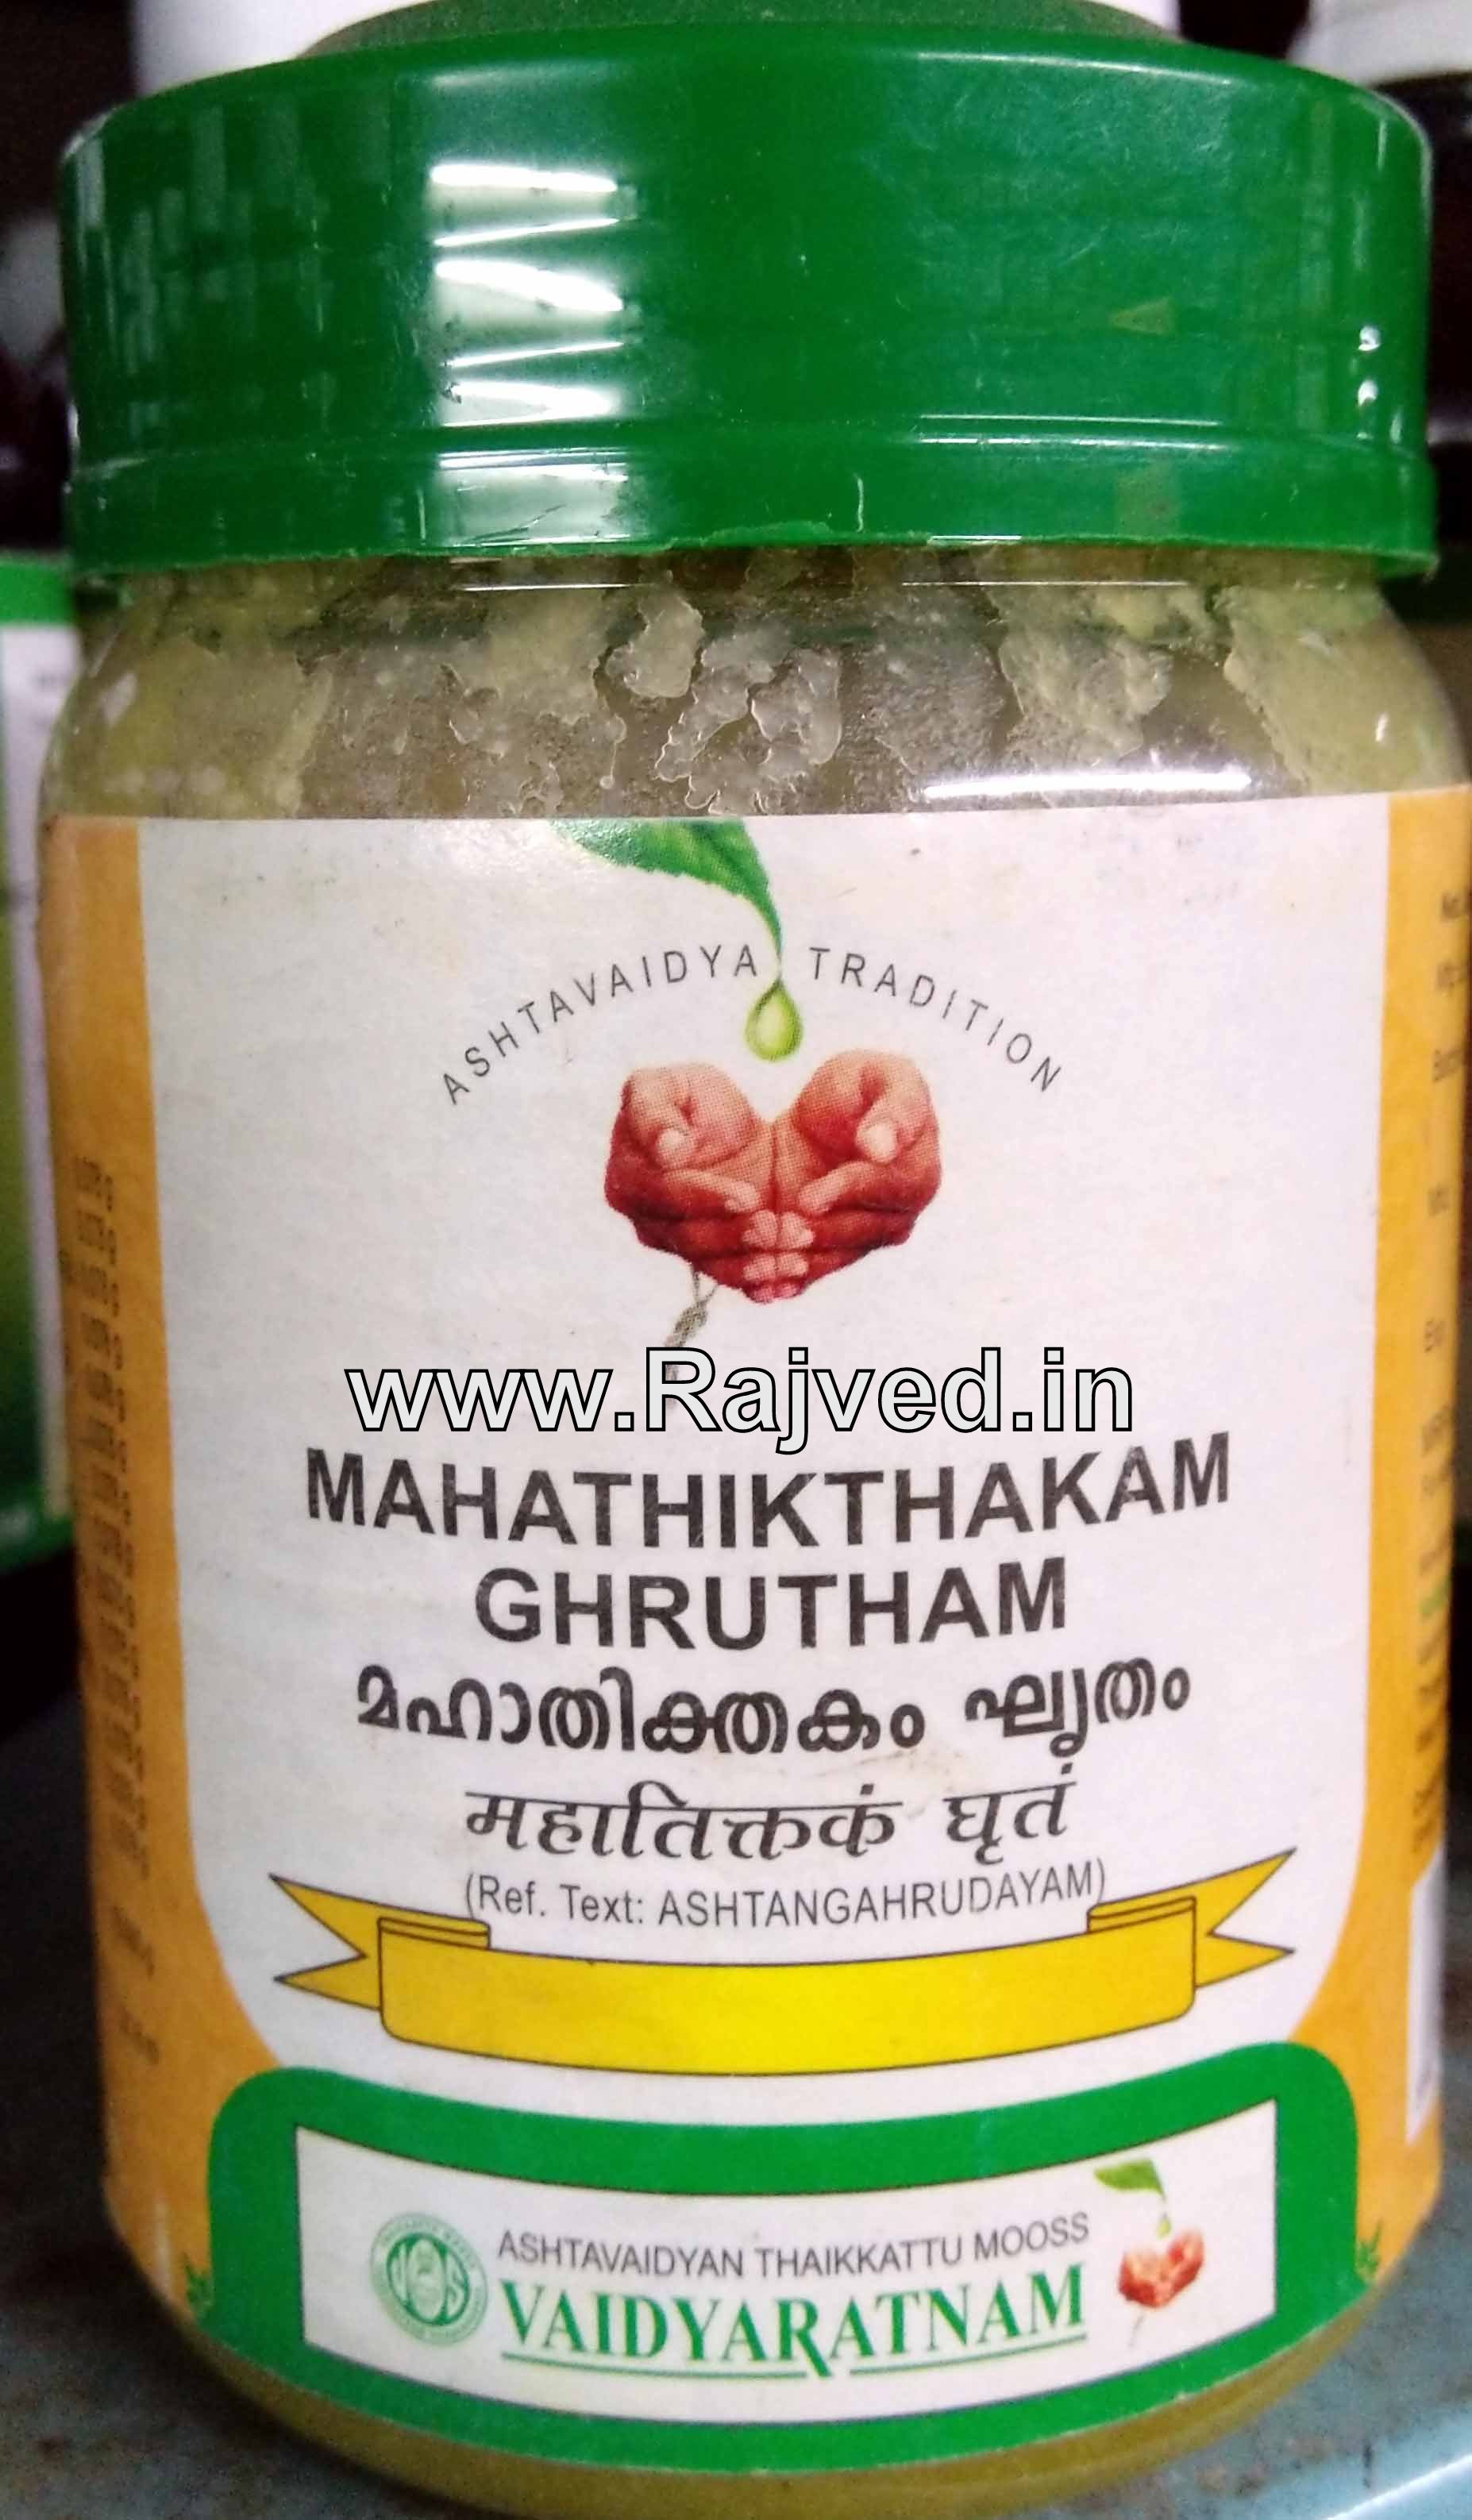 mahathithakam ghrutham 150gm upto 20% off vaidyaratnam Oushadhalaya